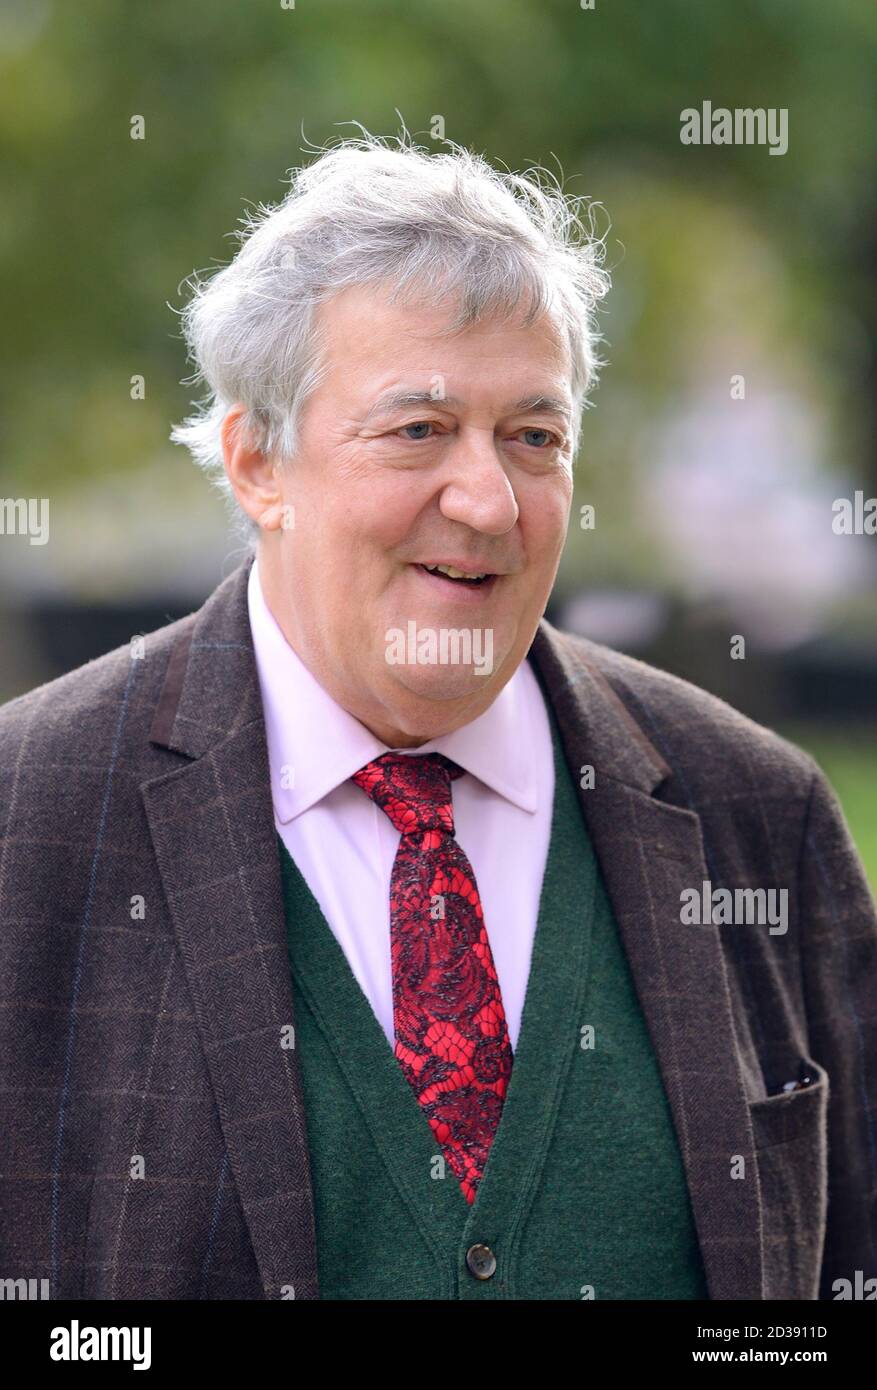 Stephen Fry - acteur, comédien et écrivain - à Westminster après avoir filmé une interview. Octobre 2020 Banque D'Images